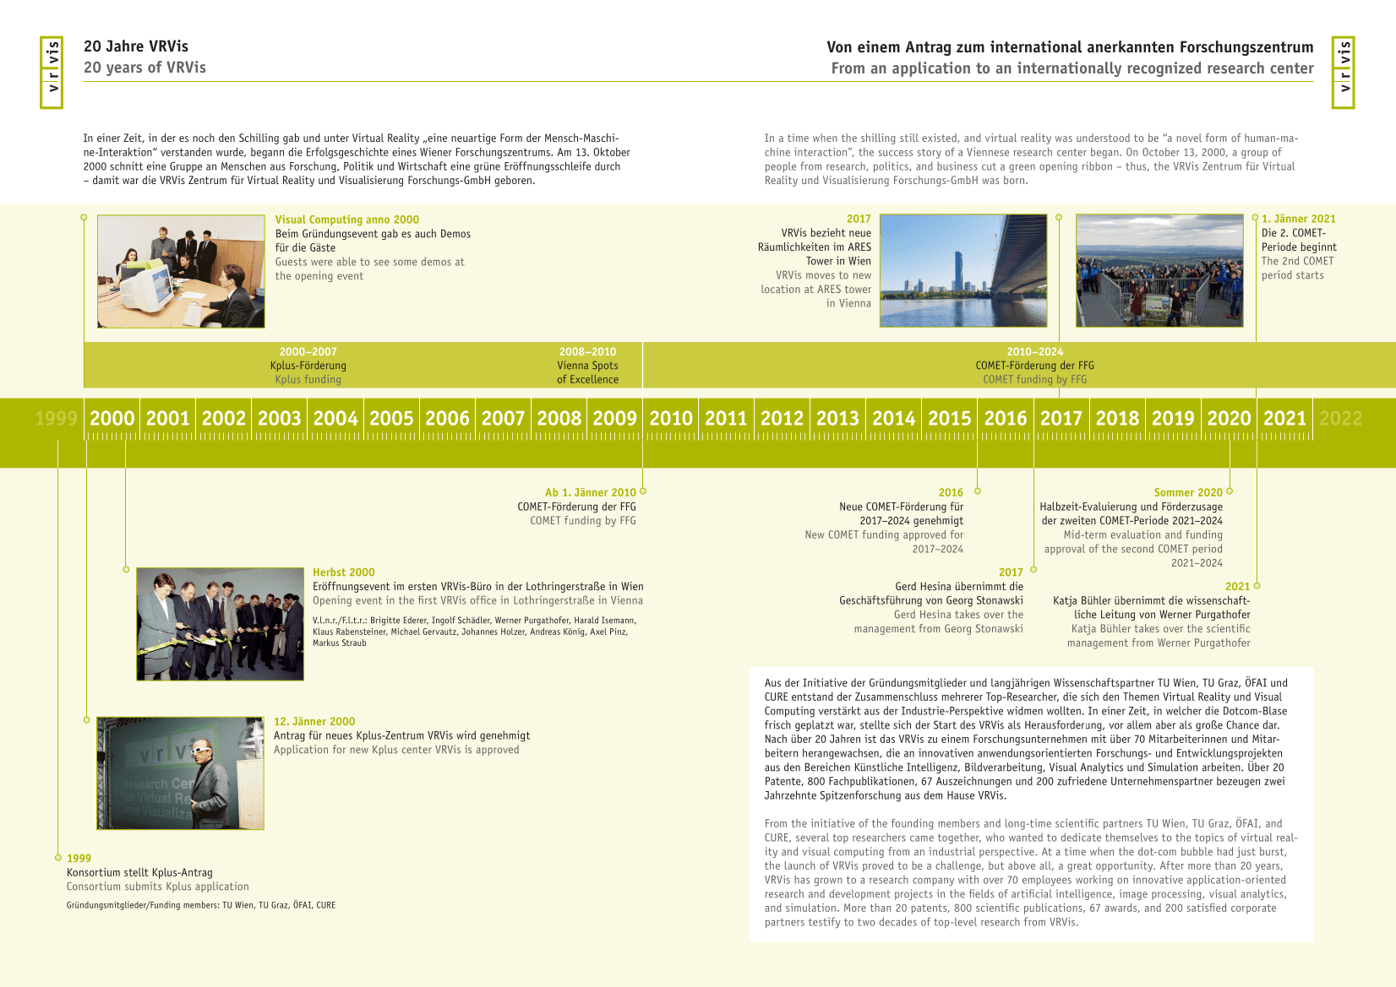 Timeline und Fotos zu 20 Jahre VRVis - von 2000 bis 2020